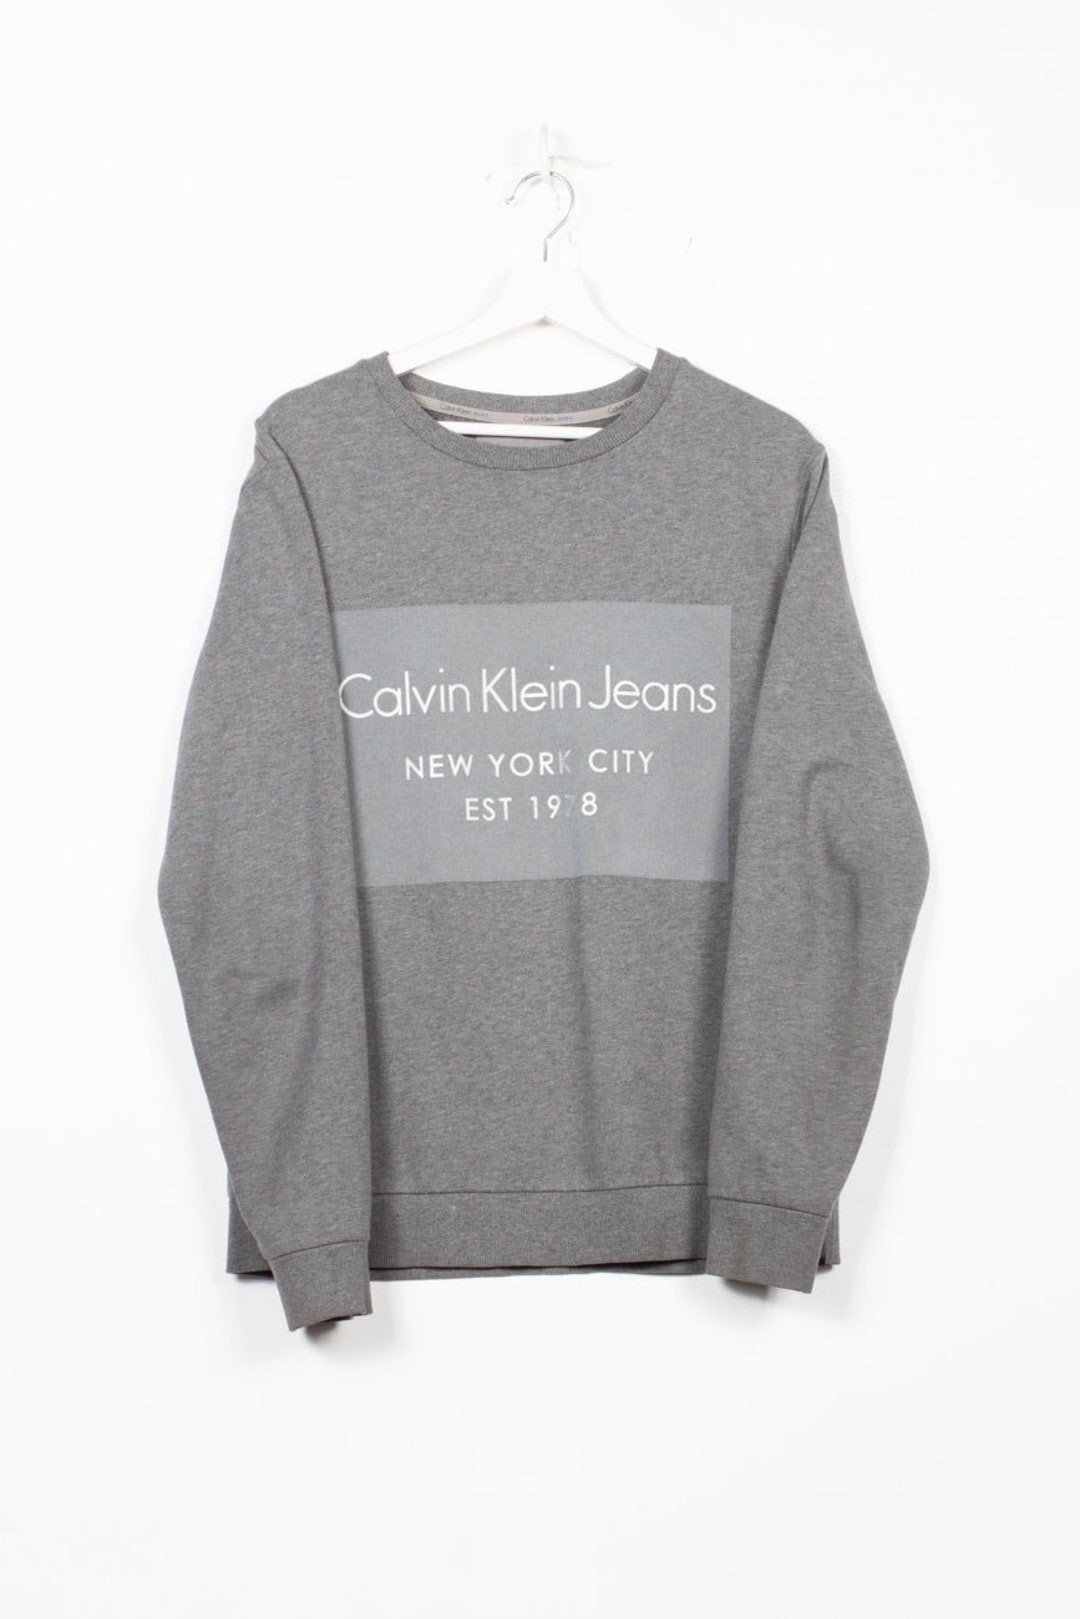 Calvin Klein Sweatshirt in Gray, M - Etsy